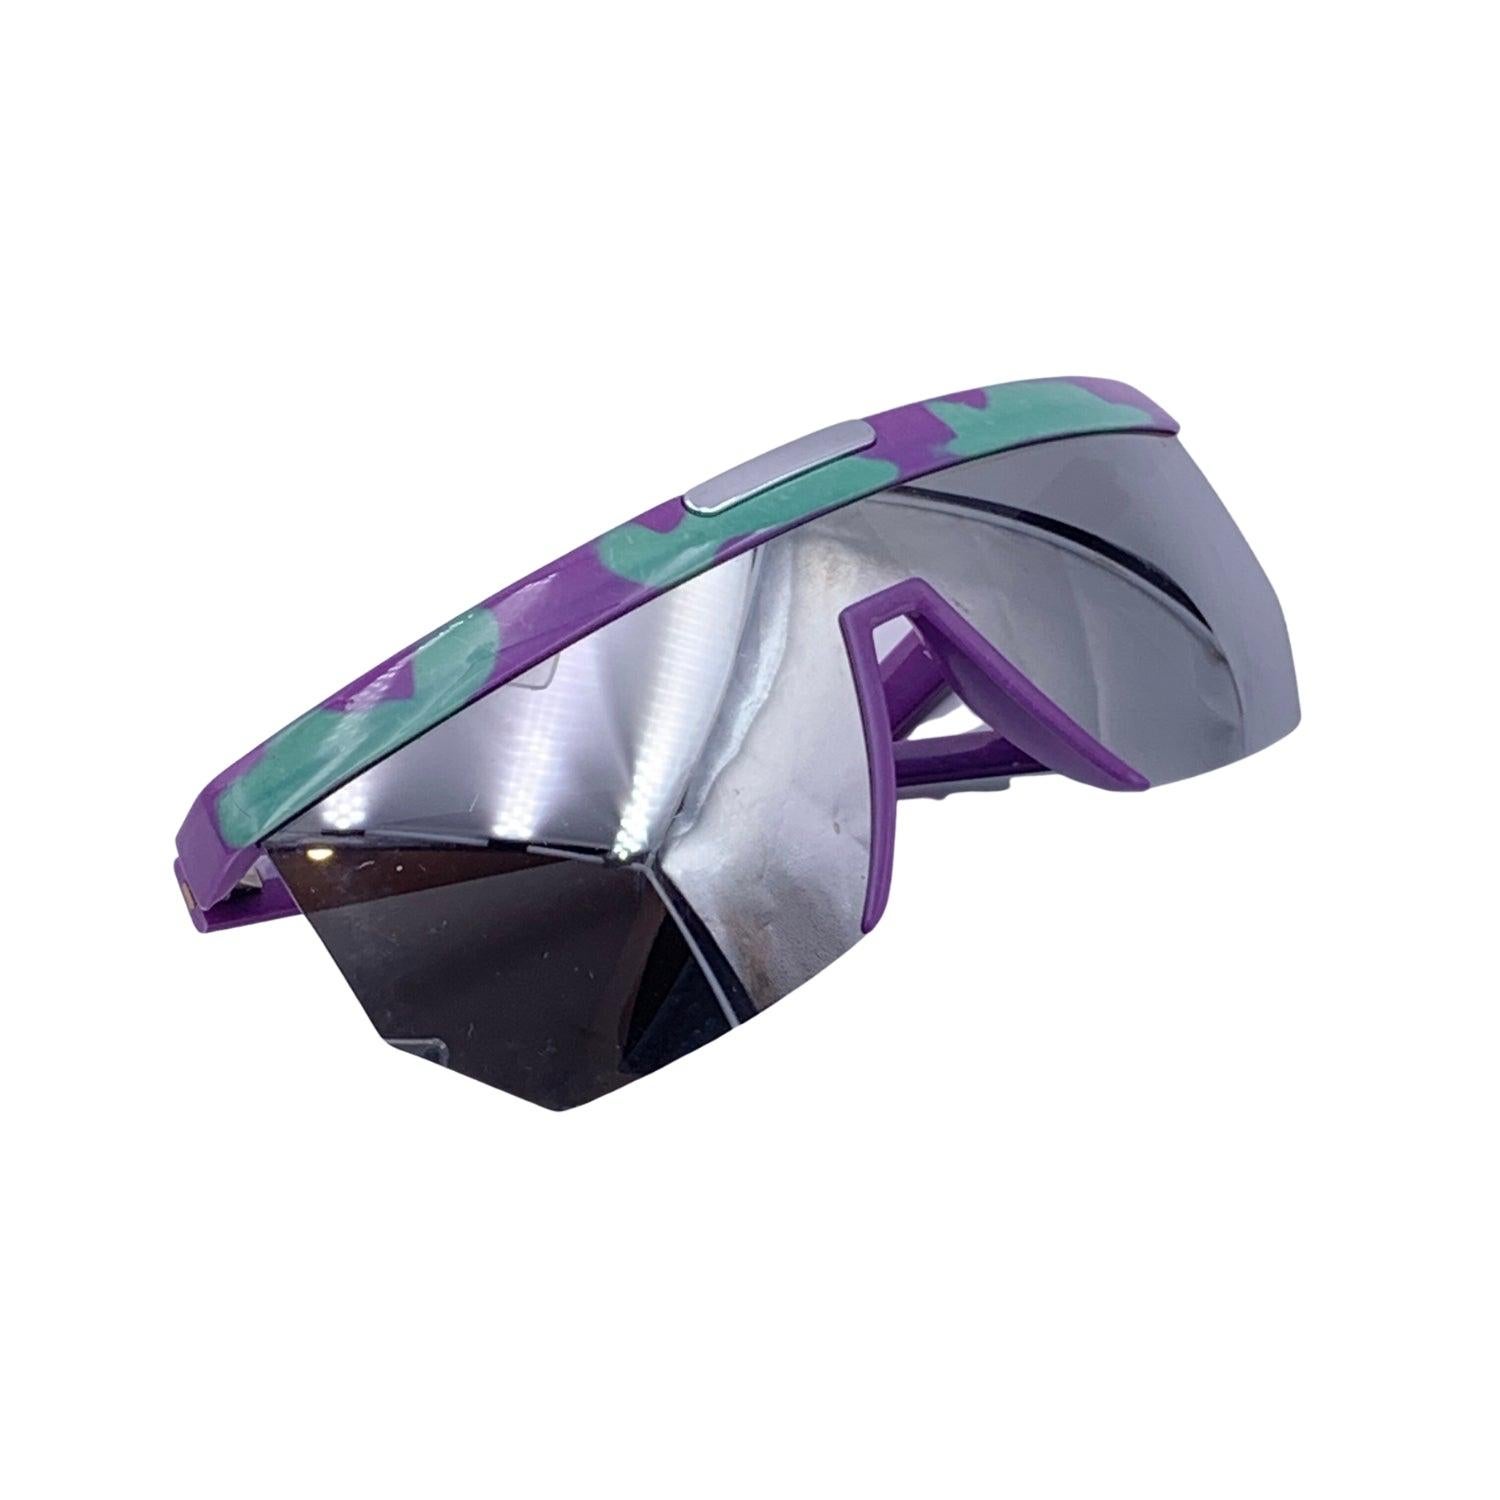 Silhouette Vintage Sonnenbrille. Modell: M 3077/10. Größe: 66/12 125 mm. Rahmen und Bügel aus lila und hellgrünem Acetat. 100 % vollständiger UVA/UVB-Schutz. Verspiegelte Gläser.

Bedingung

A+ - MINT

Nie getragen oder benutzt. Wie auf den Bildern